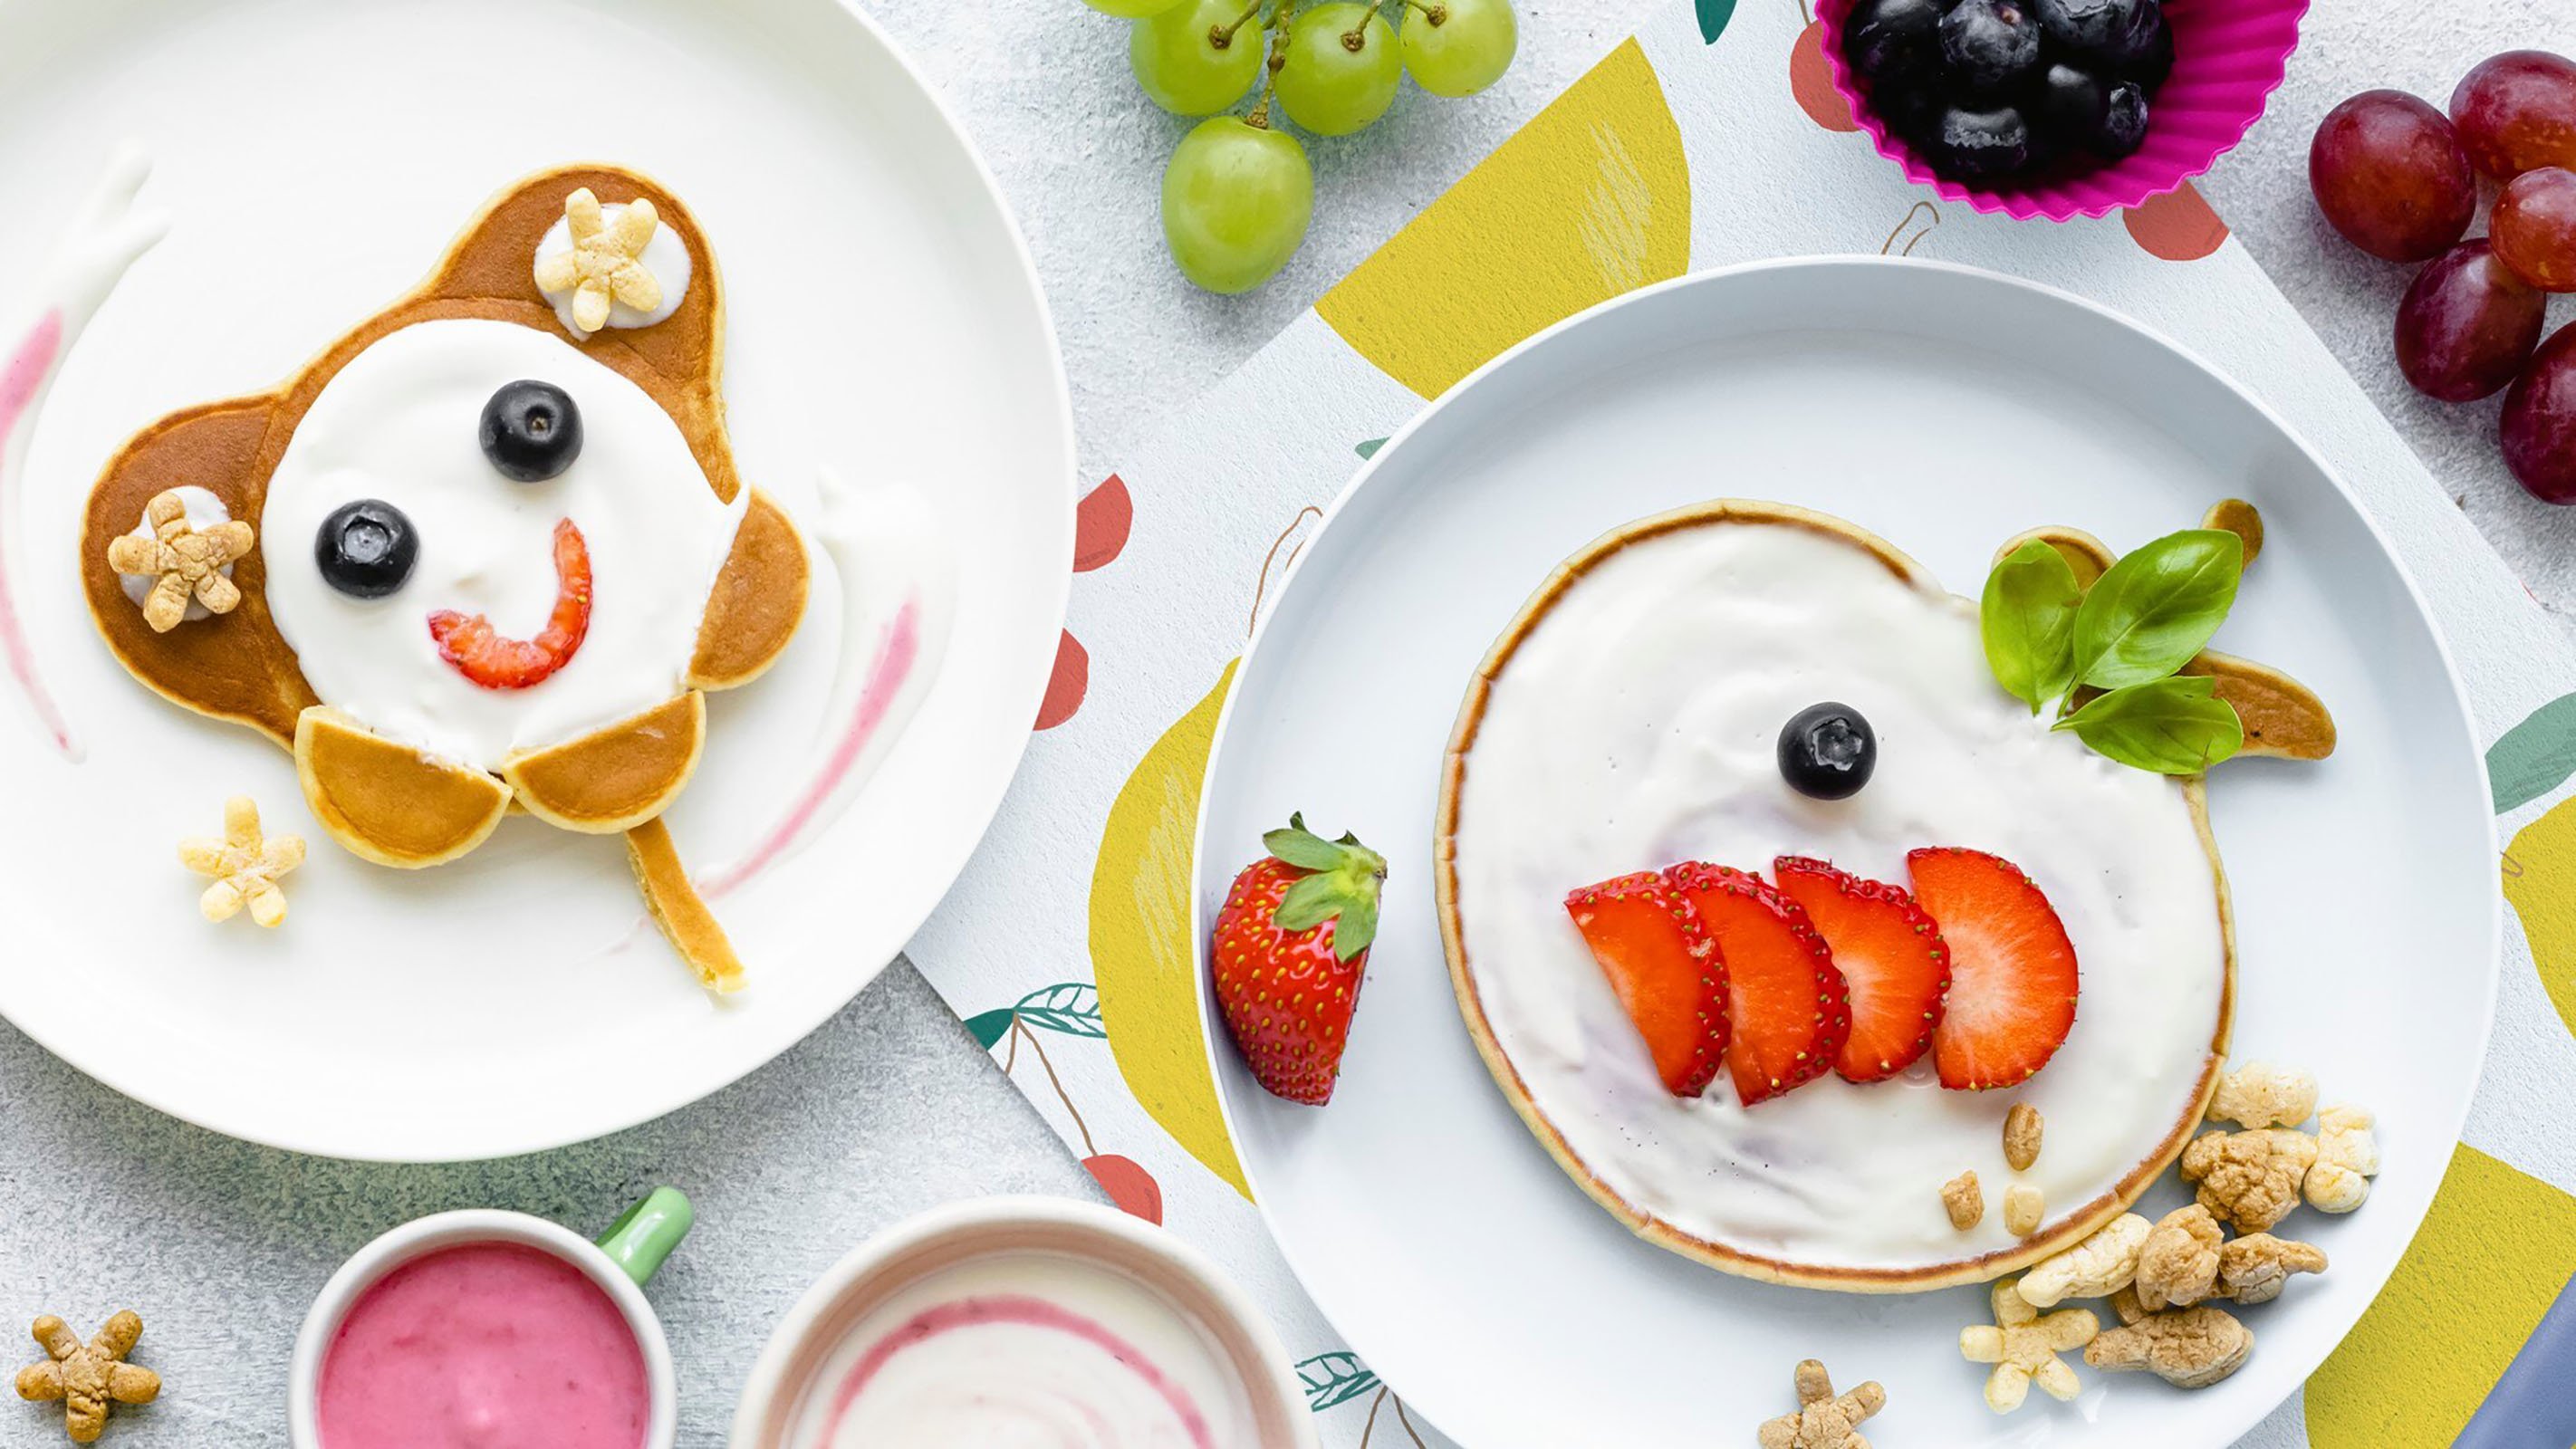 Пять идей завтраков для ребенка на год, которые стоит попробовать